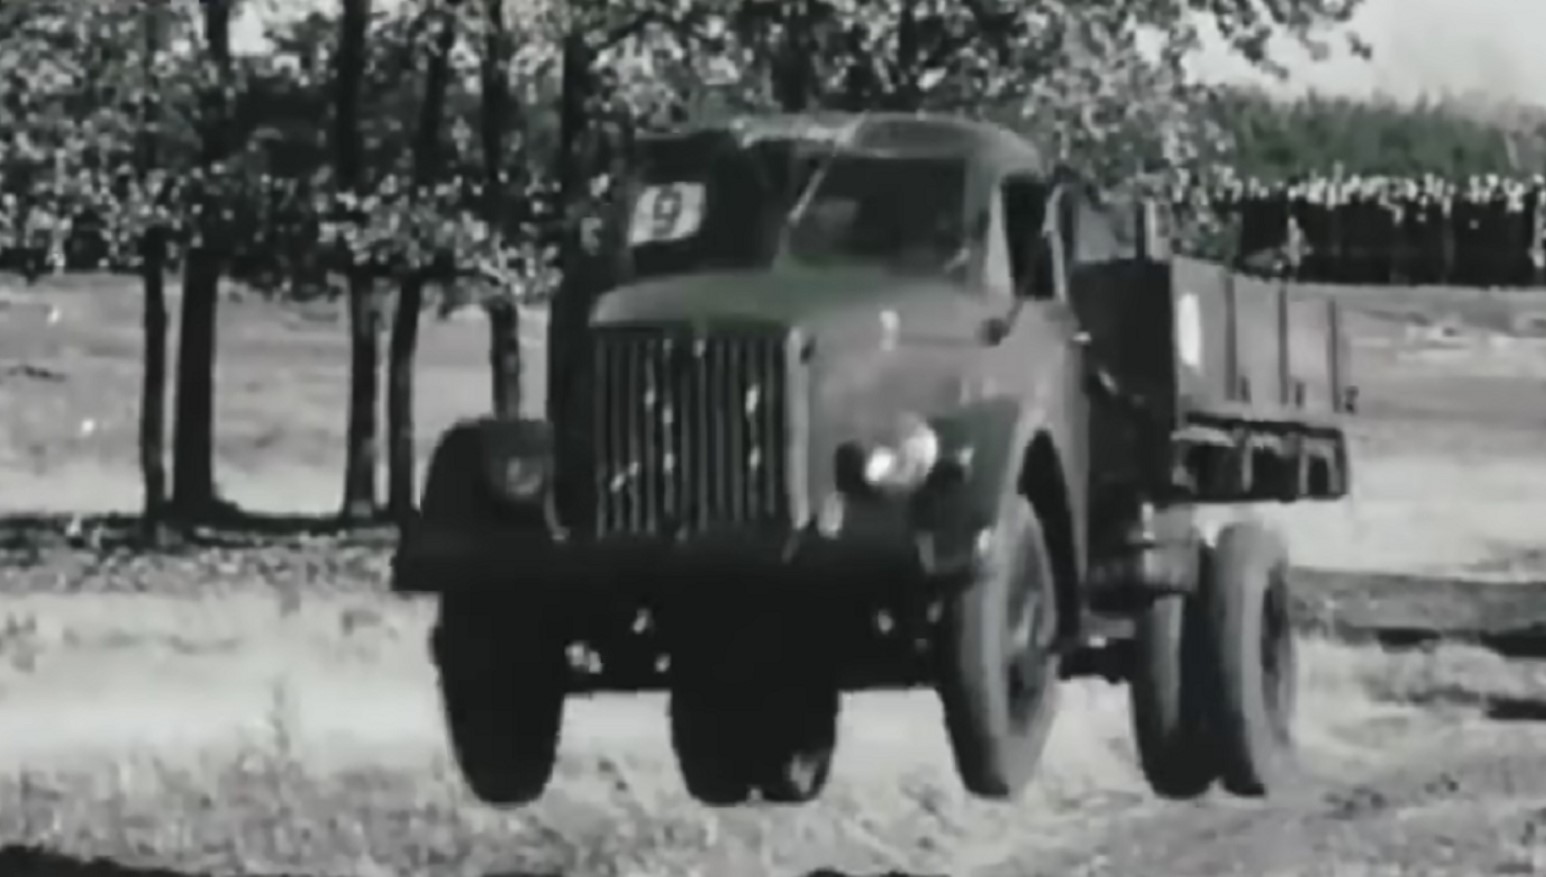 В Сети заметили редчайший трехосный грузовик ГАЗ-51